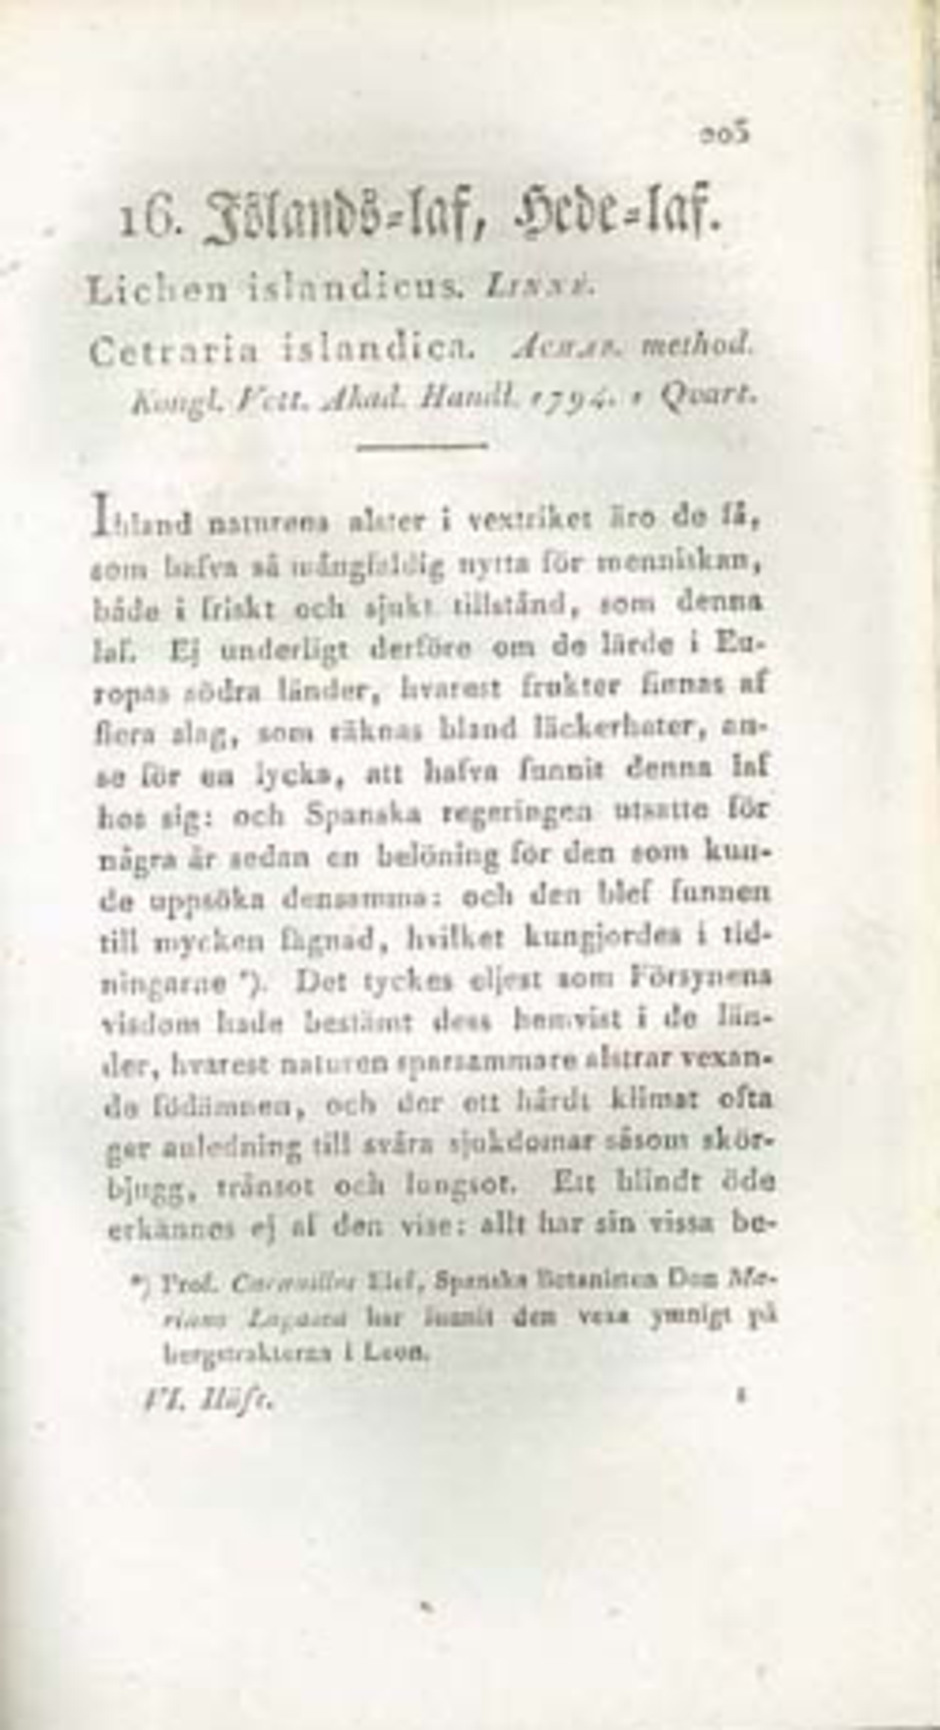 Första sidan av beskrivningen av islandslav ur Svenksa lafvarnas färghistoria, eller sättet att använda dem till färgning och annan hushållsnytta av J. P. Westring, 1805.